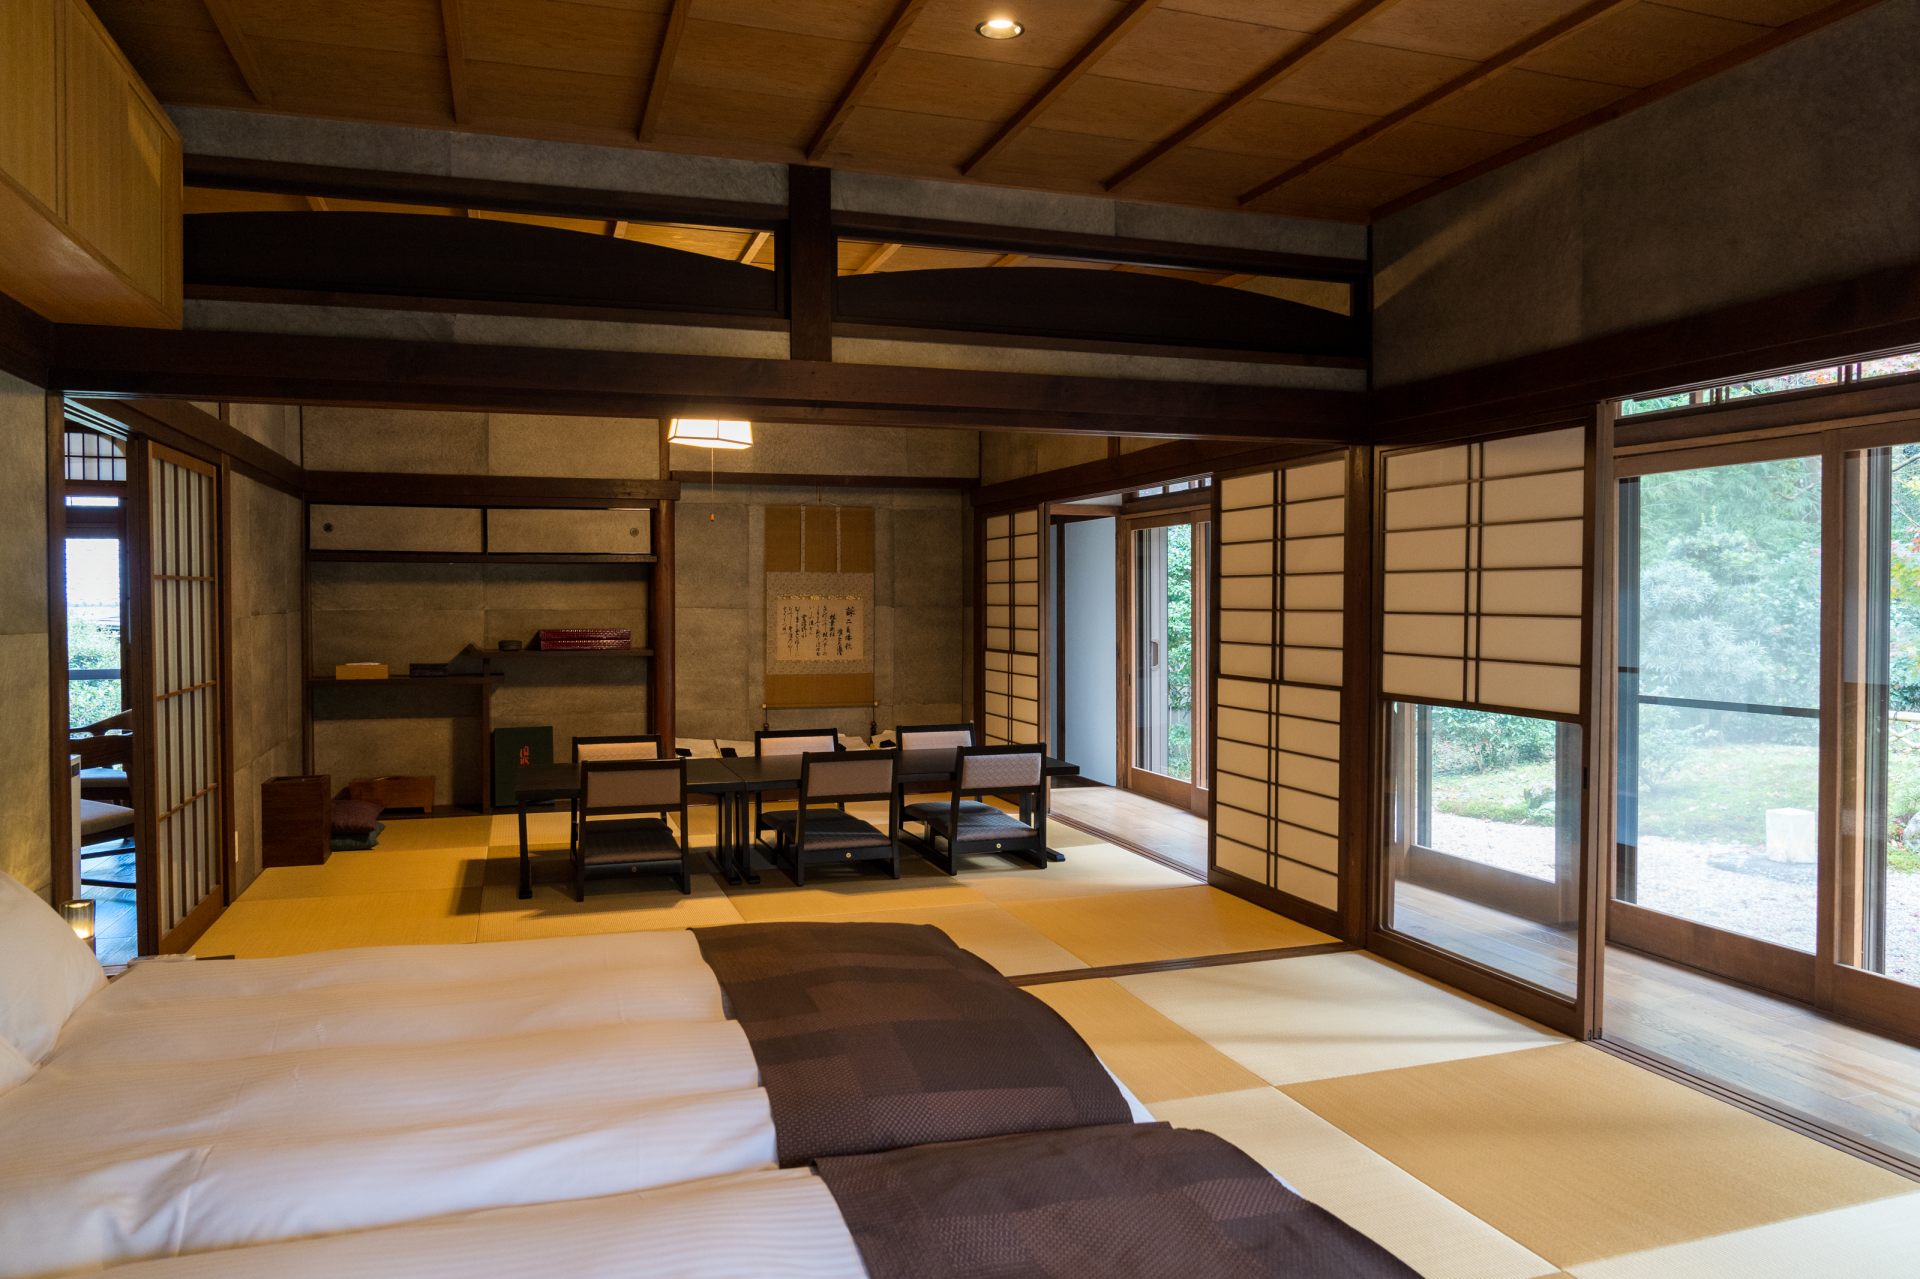 Chaque chambre a une atmosphère japonaise, avec une vue sur le jardin à travers les paravents shoji.